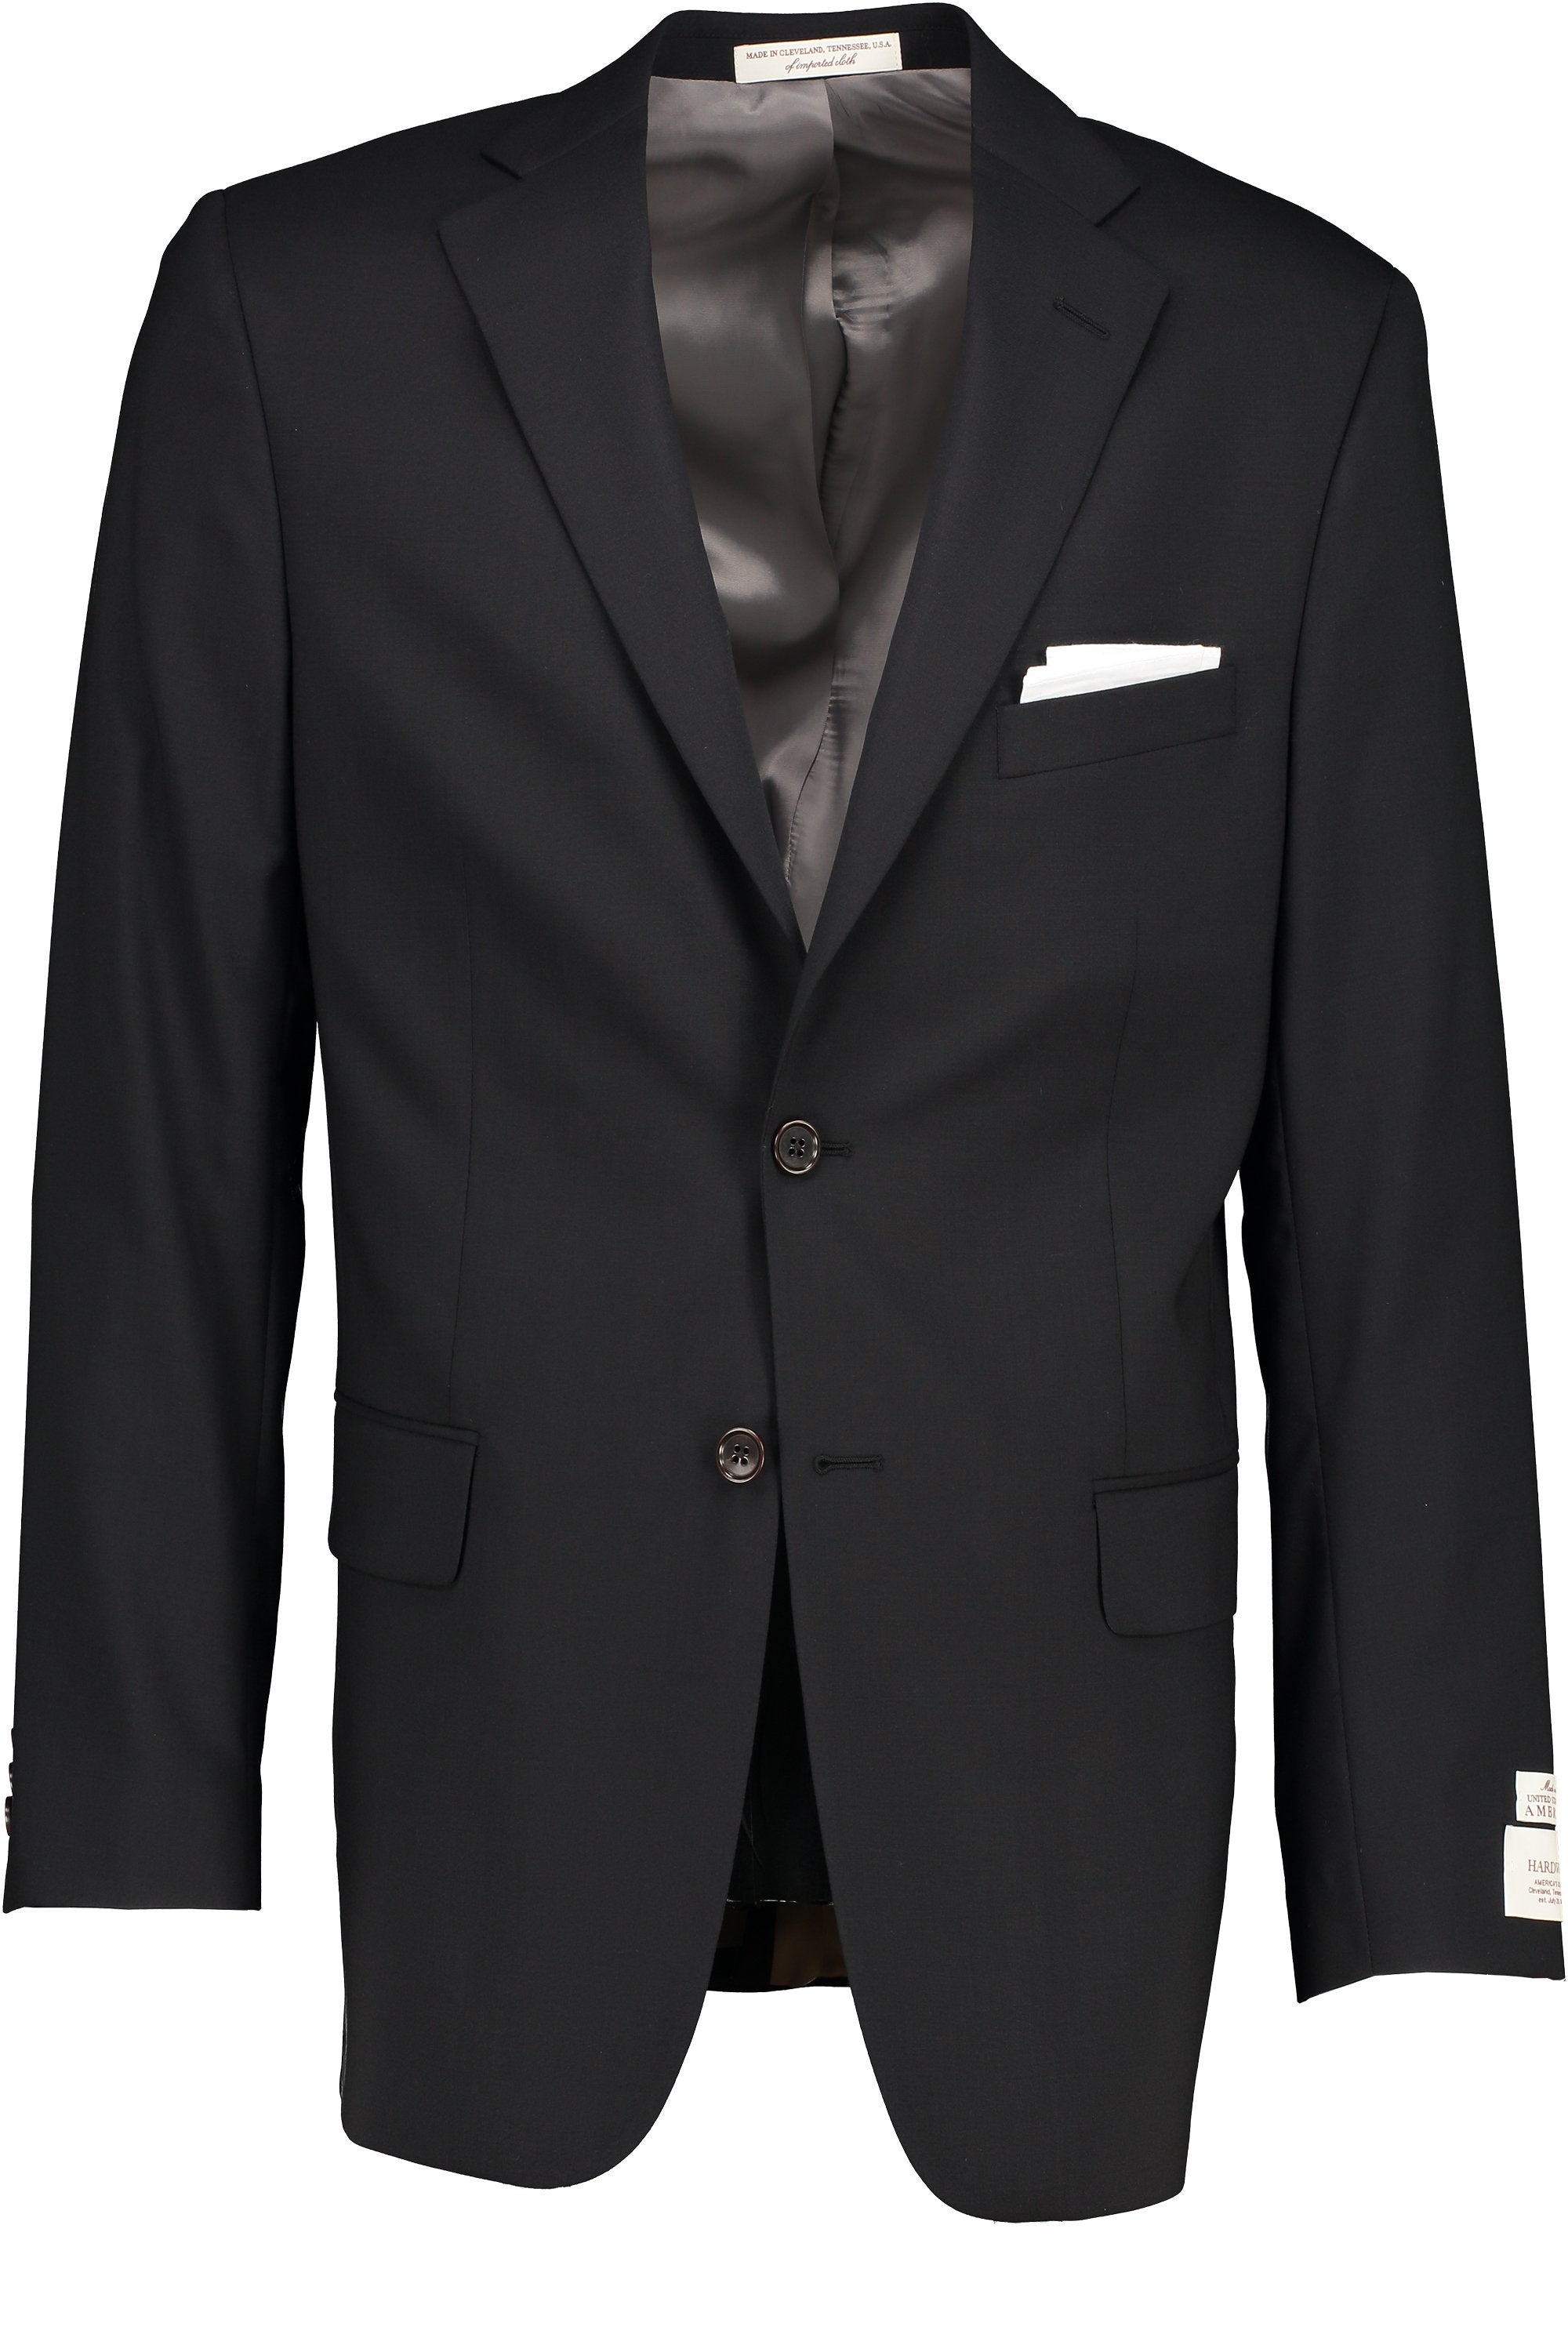 Men's 2-Piece Suits Slim Fit 2 Button Dress Suit Jacket Blazer & Pants Set  Black at Amazon Men's Clothing store